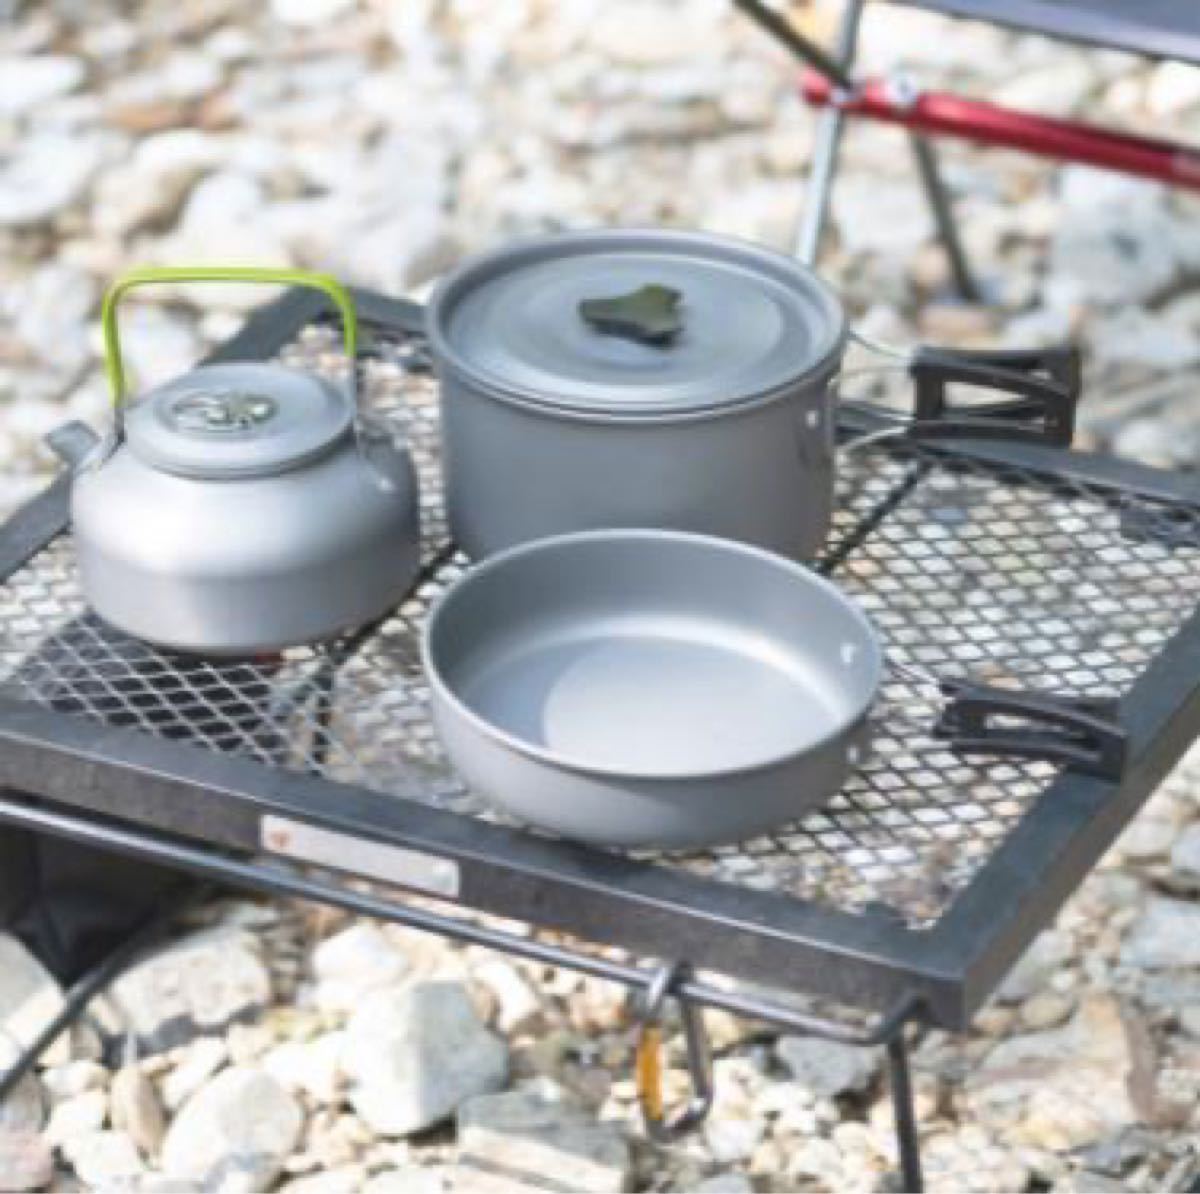 アルミ クッカー セット アウトドア キャンプ 調理器具 料理 軽量 鍋 フライパン ケトル 3点セット 収納 便利 キャンプ用